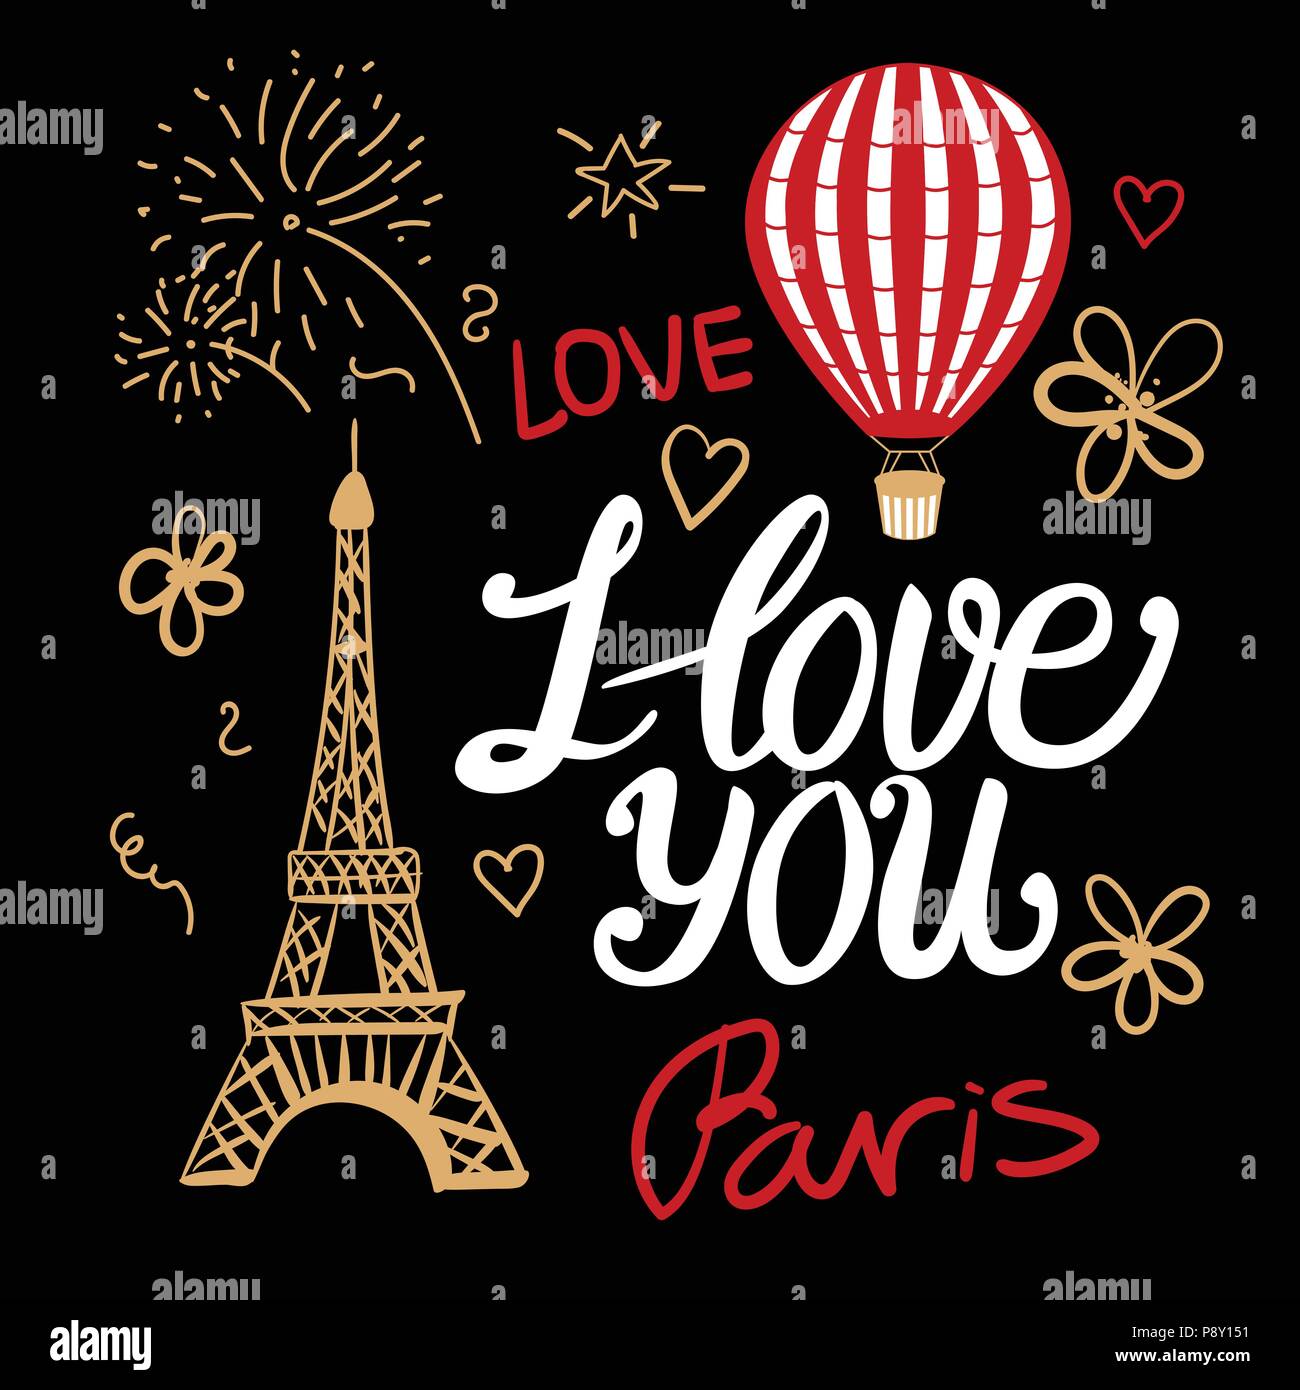 Je t'aime dans un style parisien vintage fashion. Illustrations vectorielles elements Tour Eiffel, montgolfière et lettrage. Illustration de Vecteur